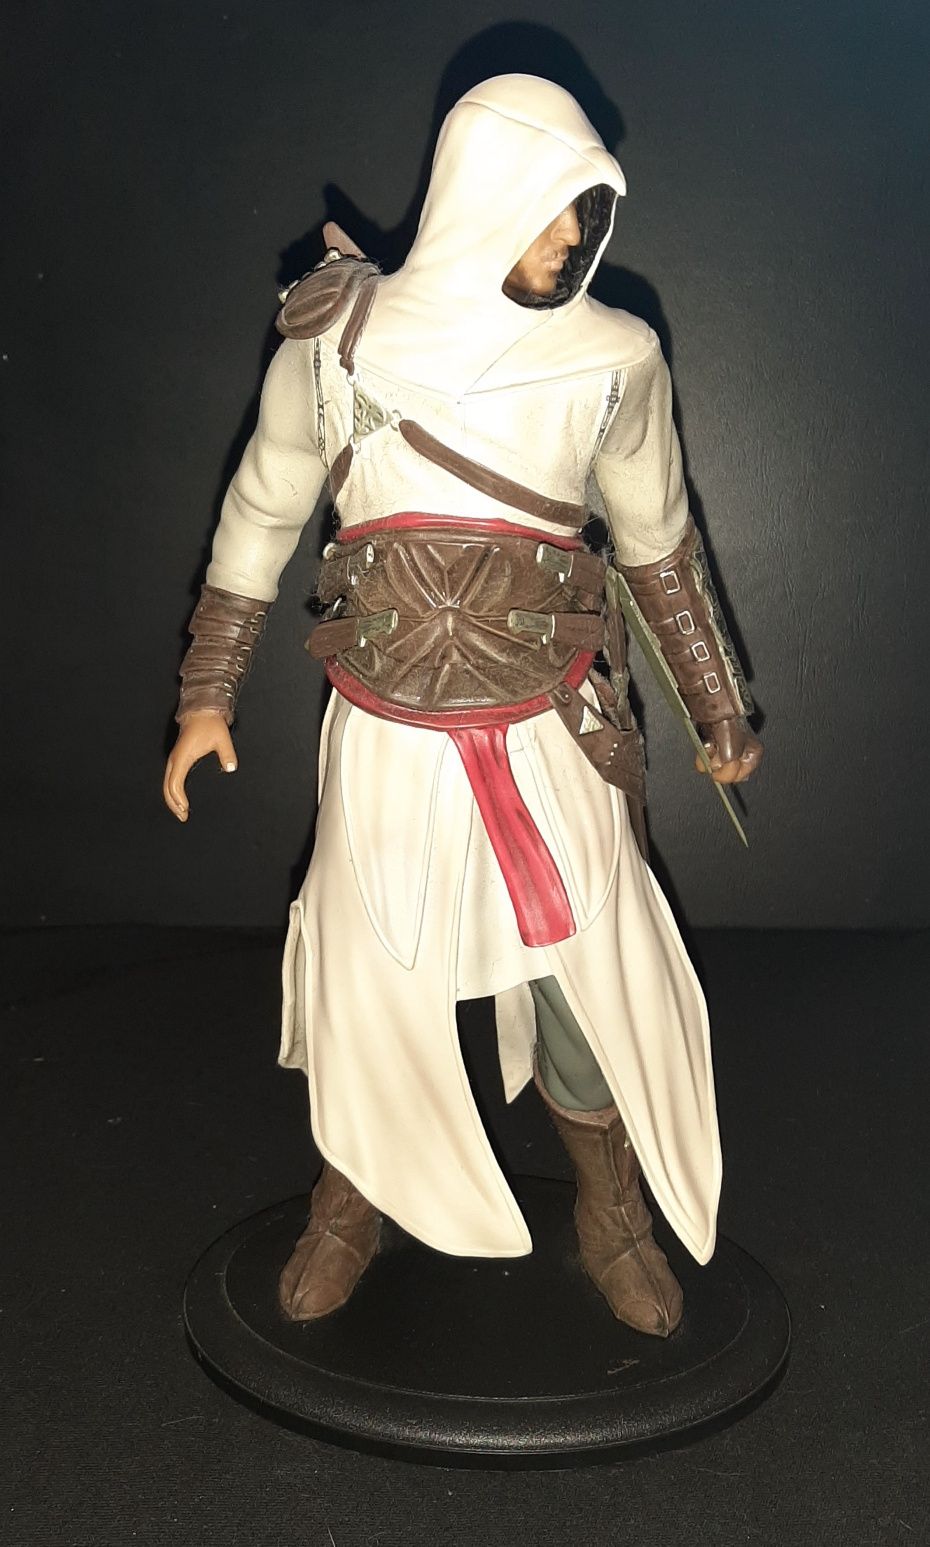 Vendo Estátua/Figura Assassin's Creed 1 (Altaïr Ibn-La'Ahad)
26Cm